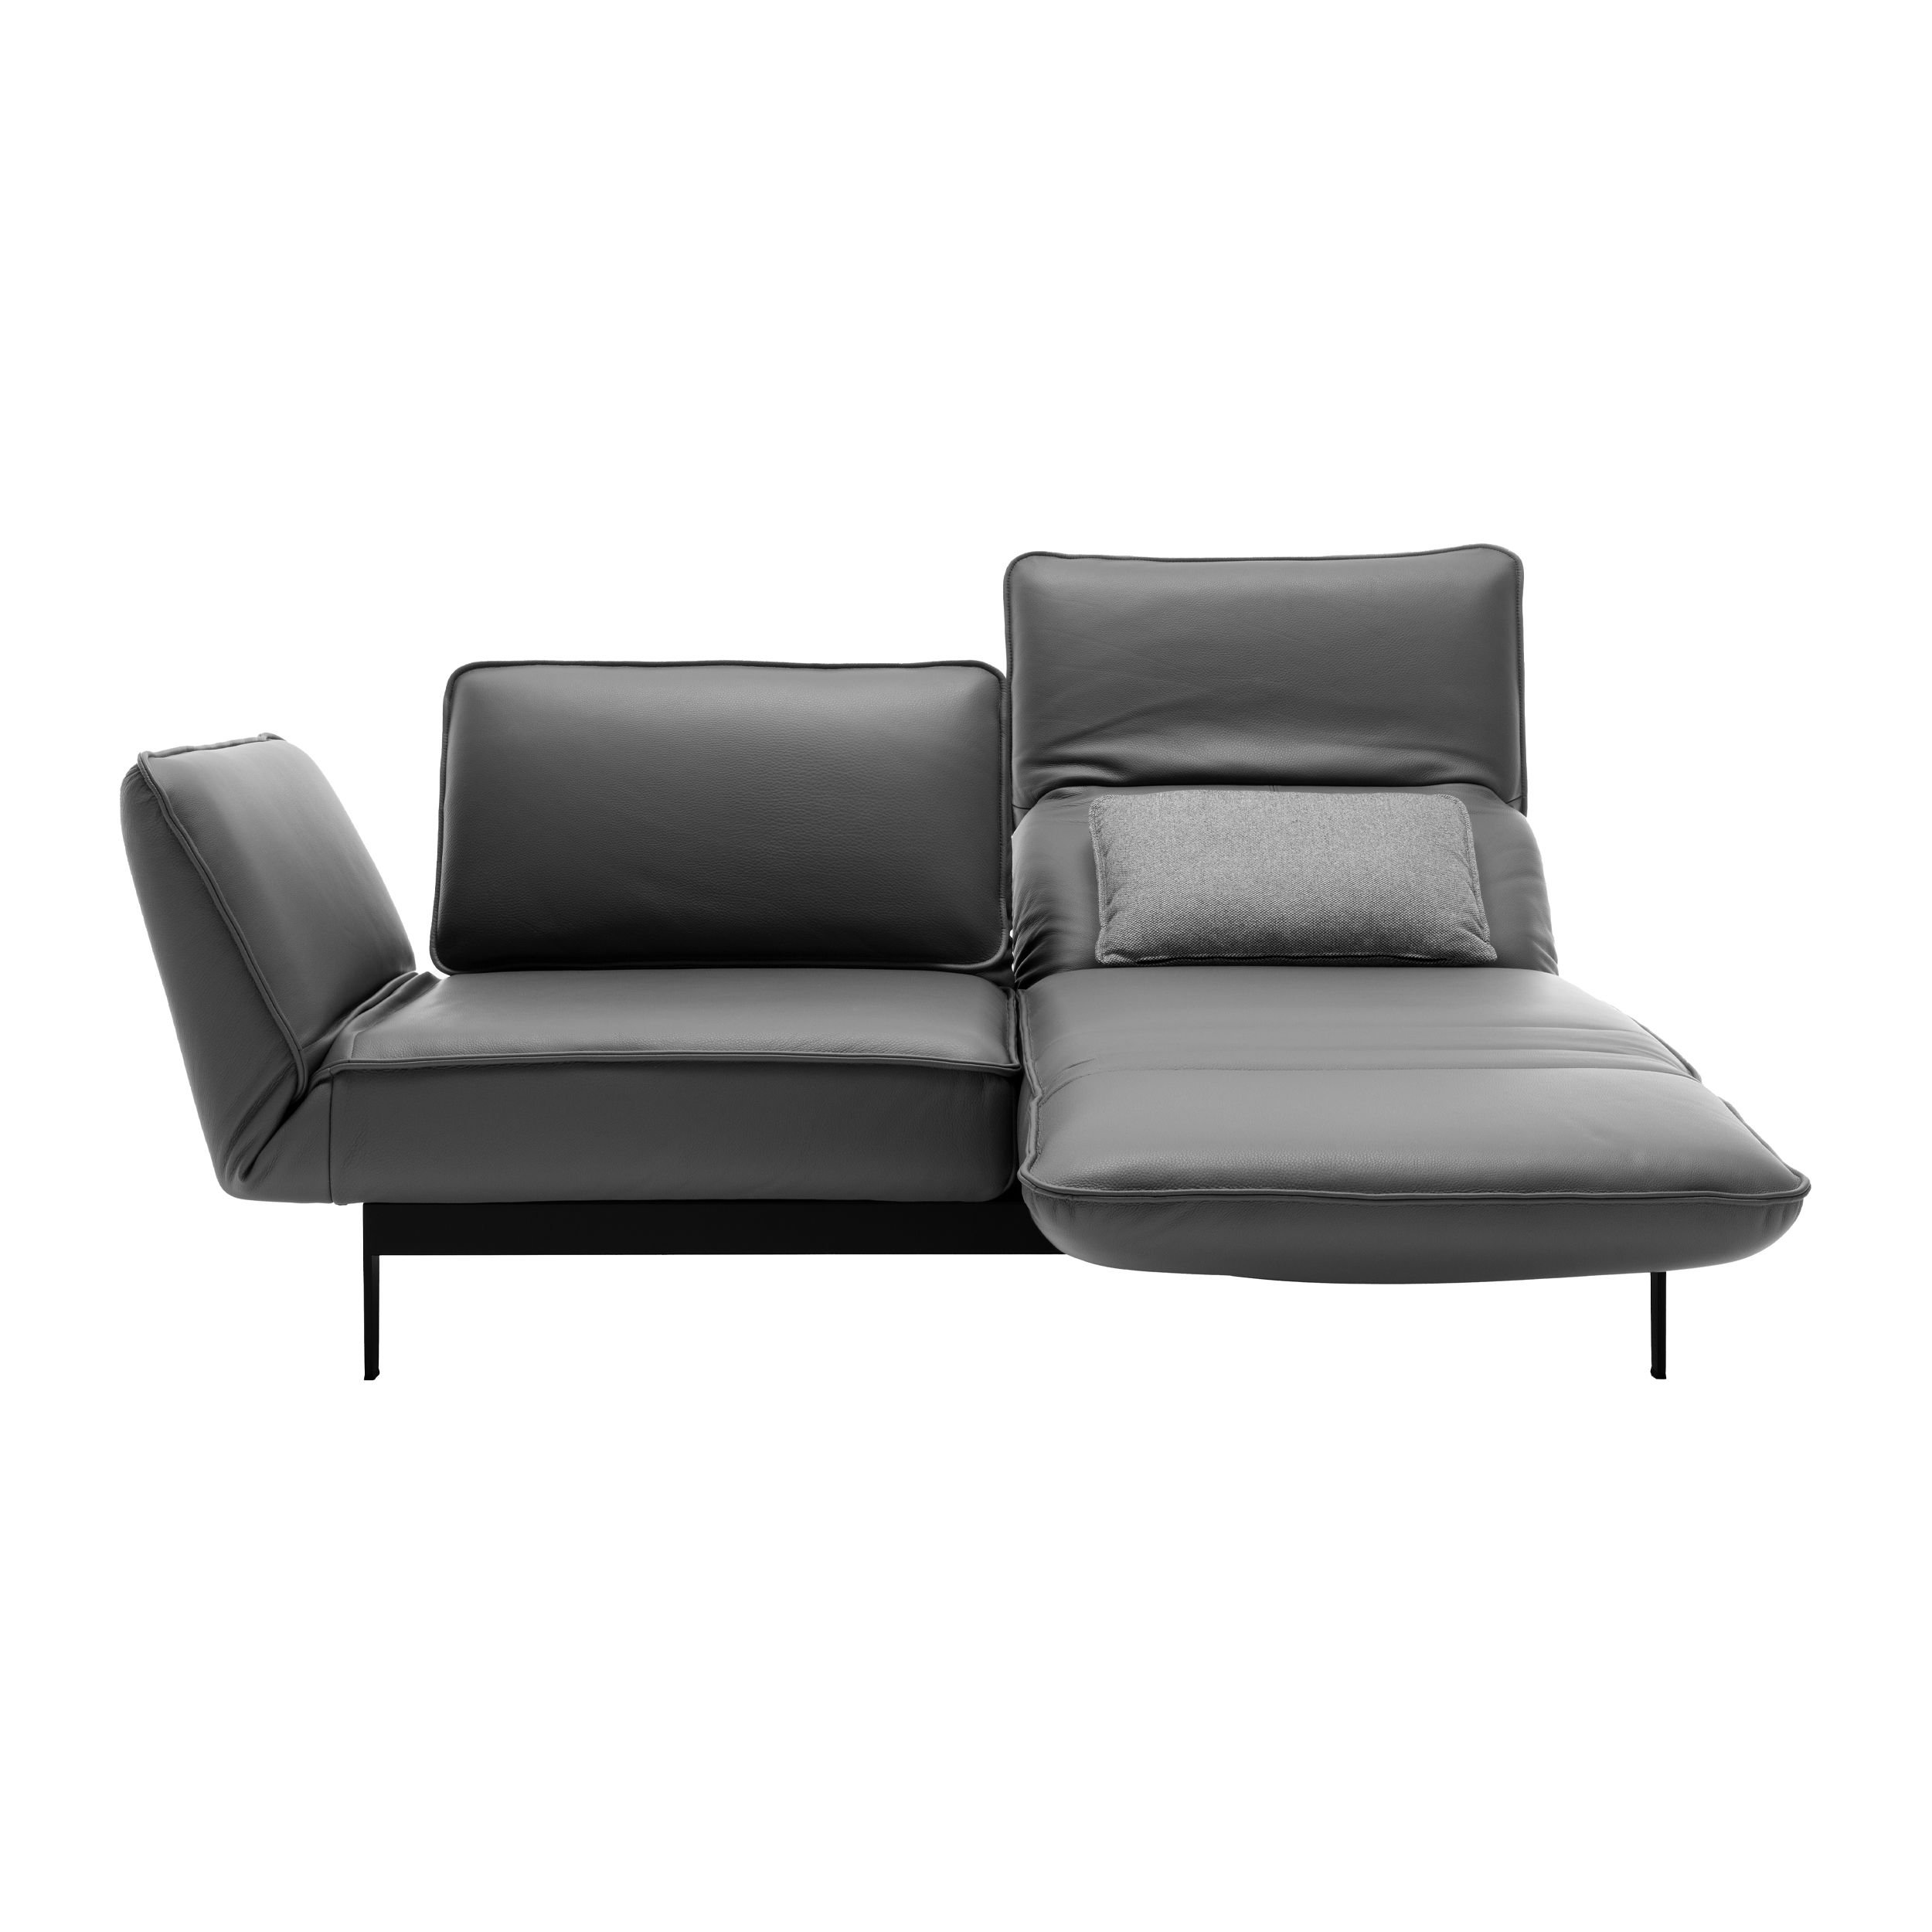 Sofa Mera in der ausklappbaren Ansicht der rechten Seite von Rolf Benz in grau